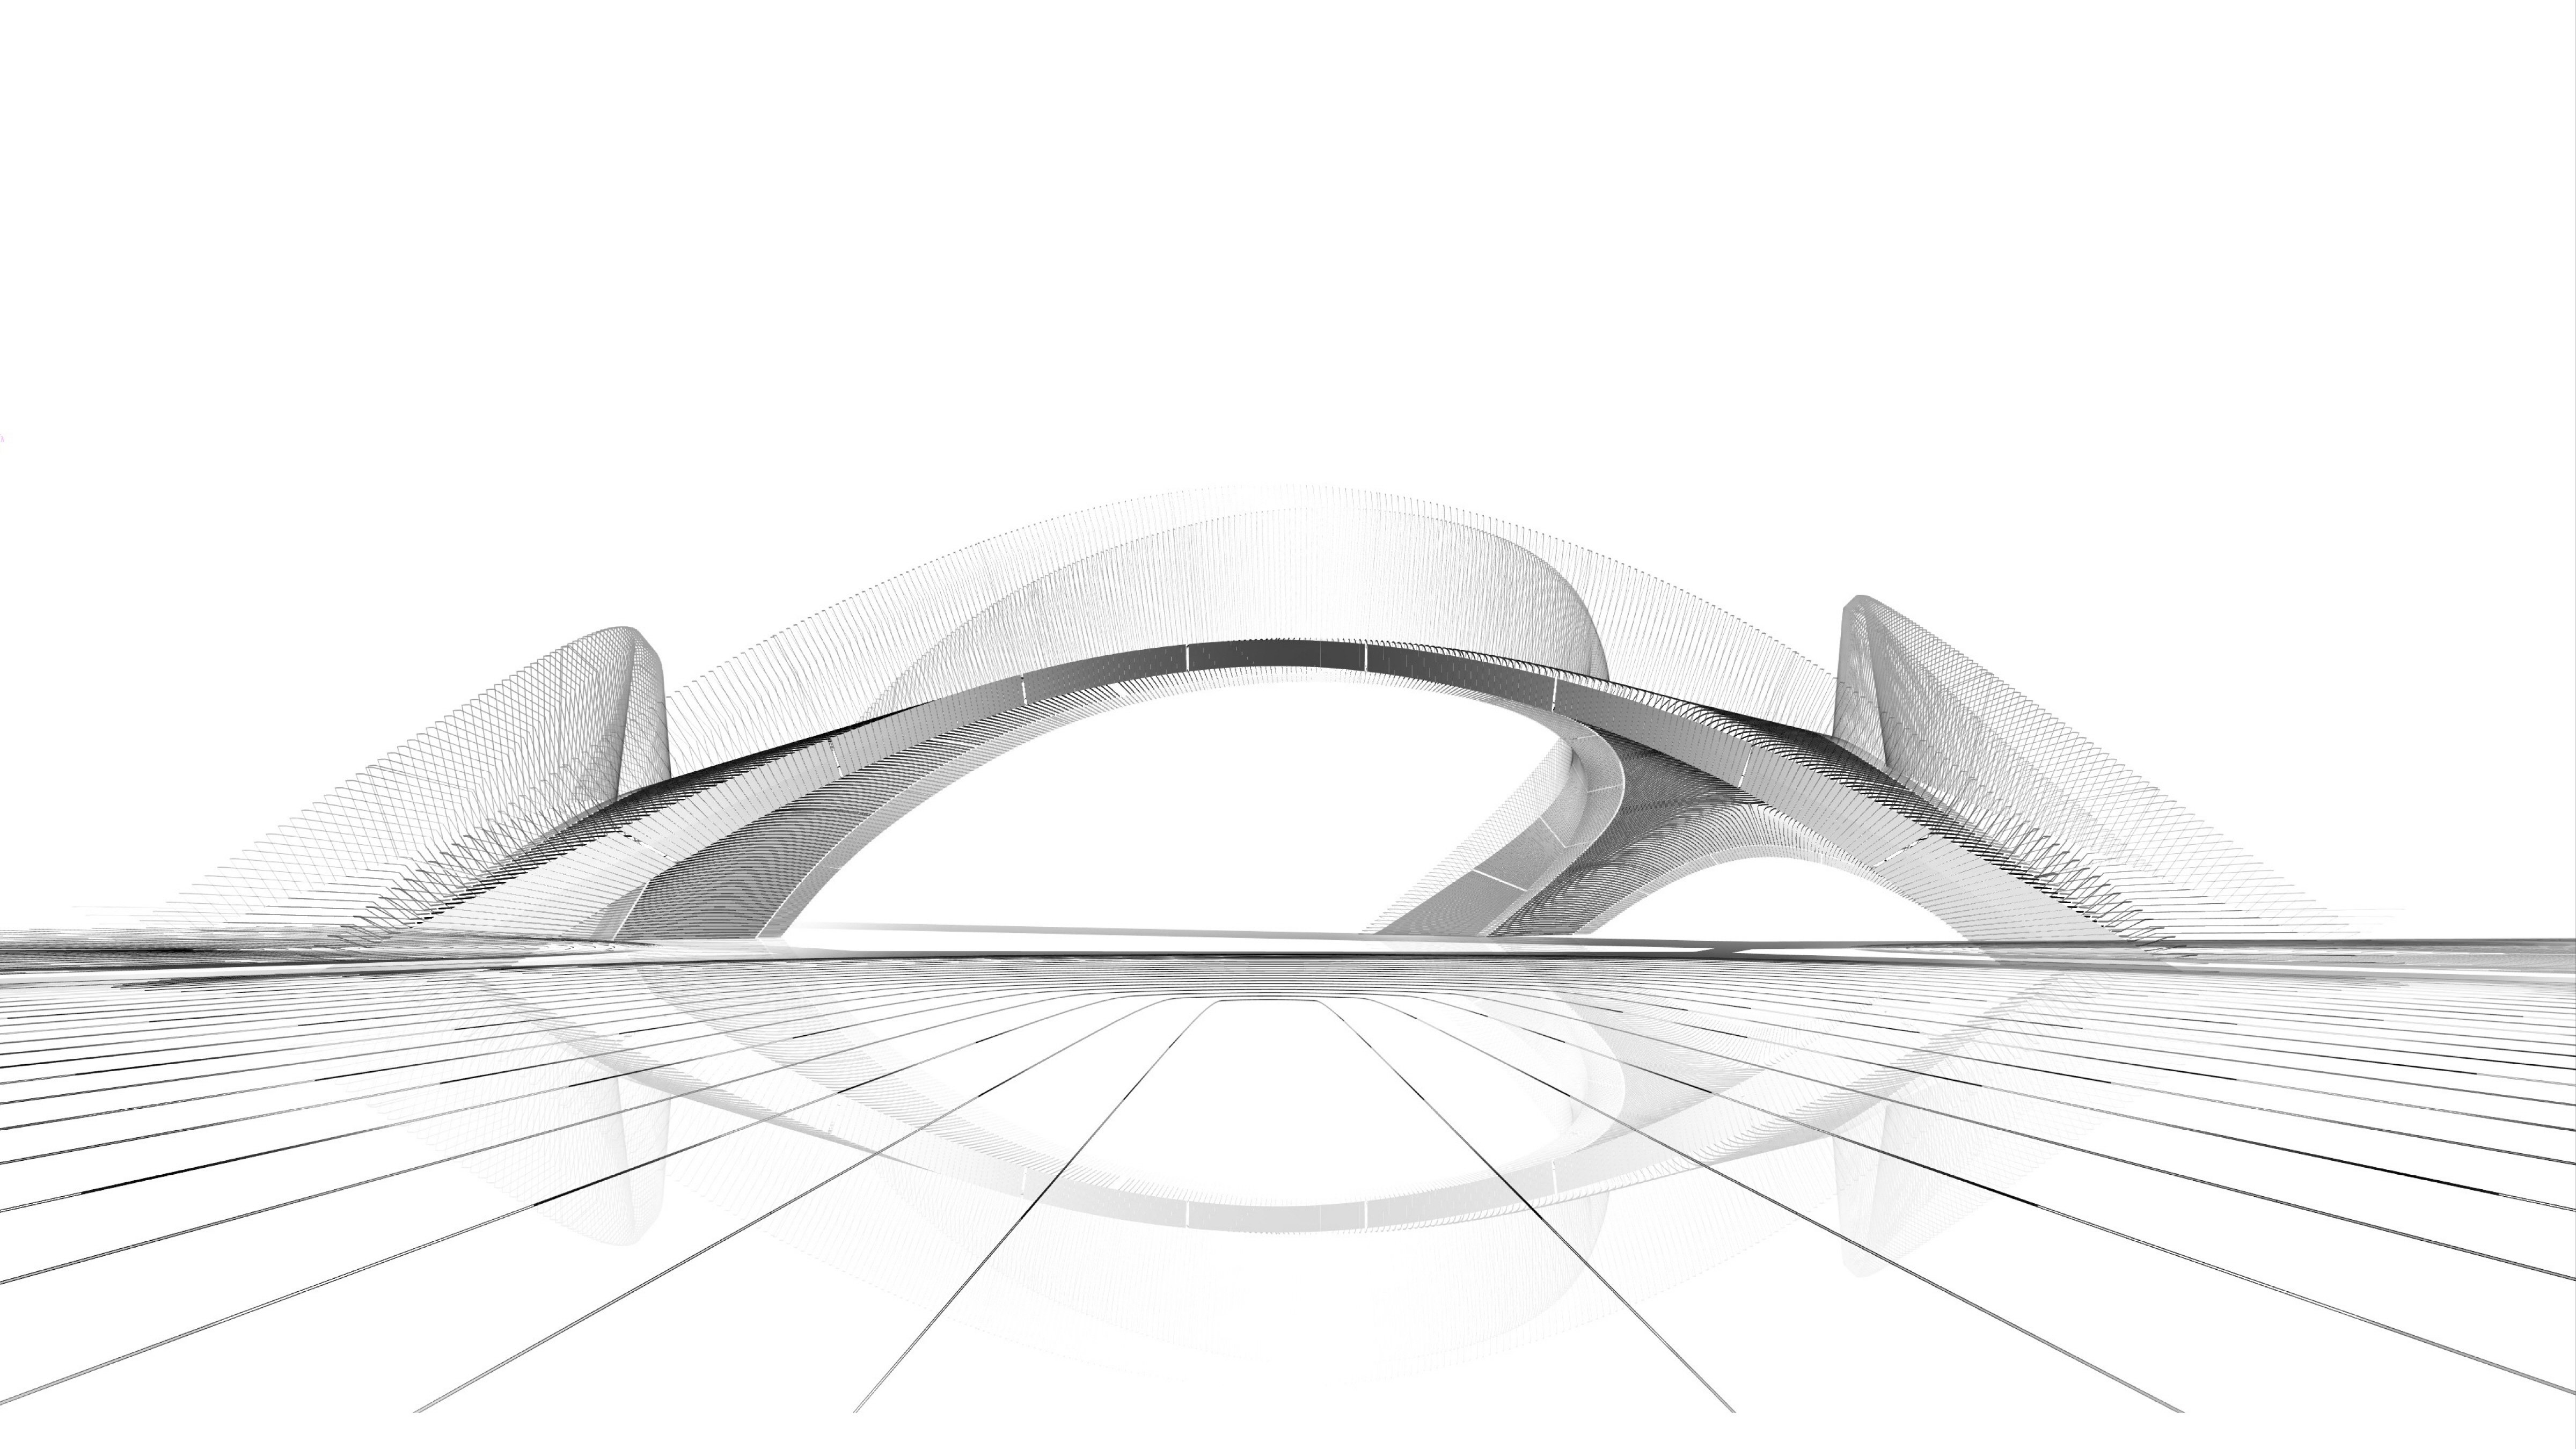 〔안정원의 디자인 칼럼〕 3D 콘크리트 프린팅 아치형 다리 ‘Striatus bridge’